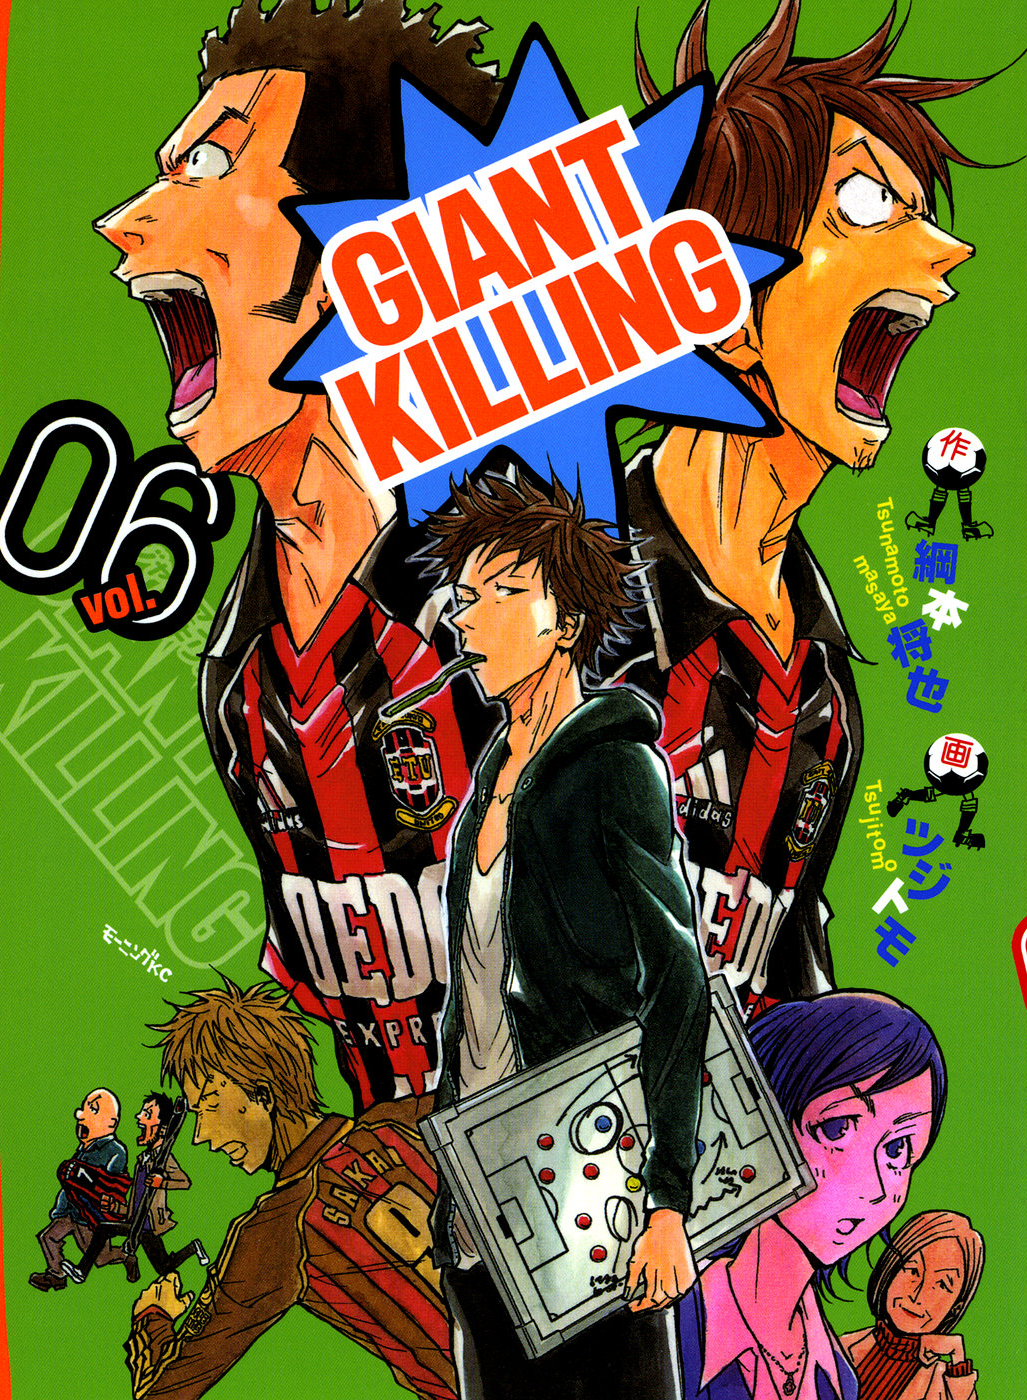 Anime, Giant Killing Wiki